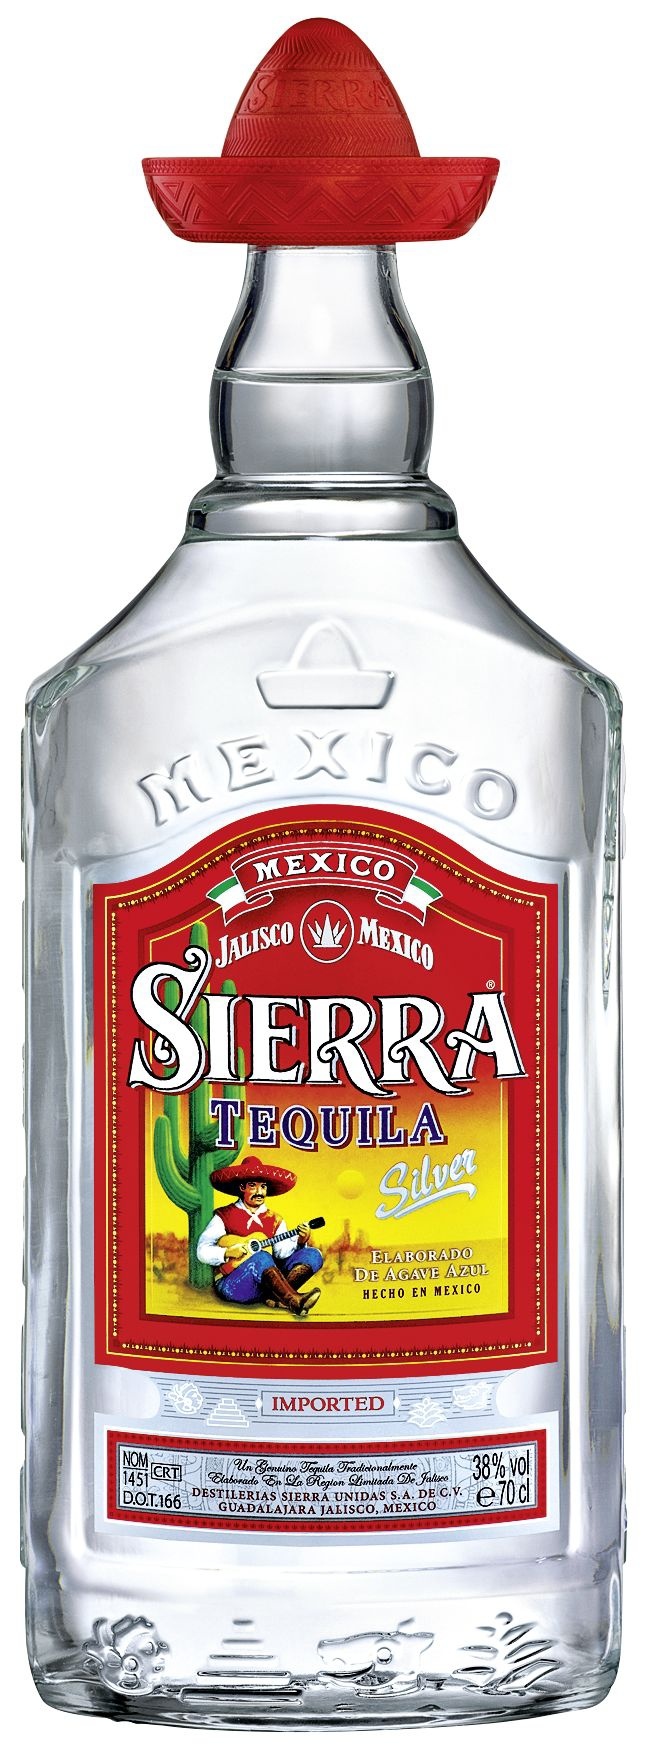 Sierra Tequila Silver 38 % Vol. 6 x 0,70 l (4,2 l)